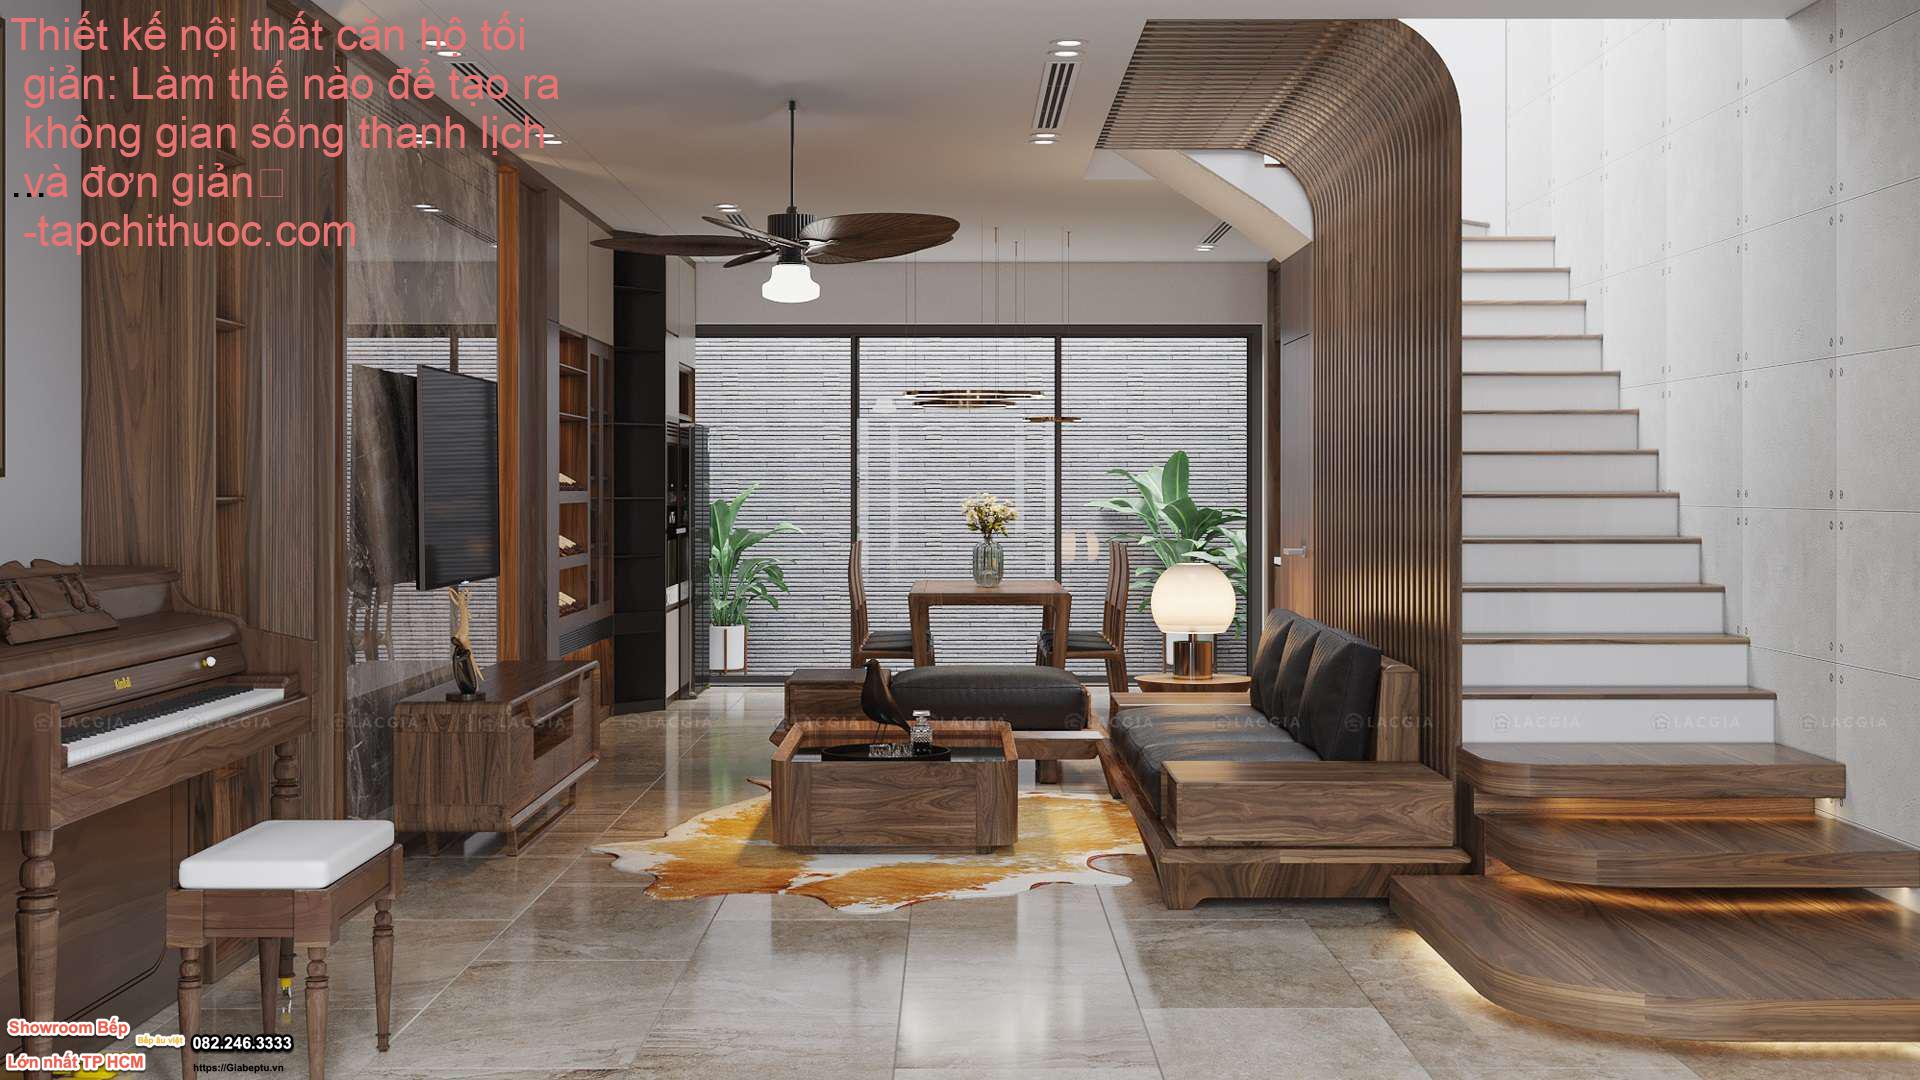 Thiết kế nội thất căn hộ tối giản: Làm thế nào để tạo ra không gian sống thanh lịch và đơn giản
